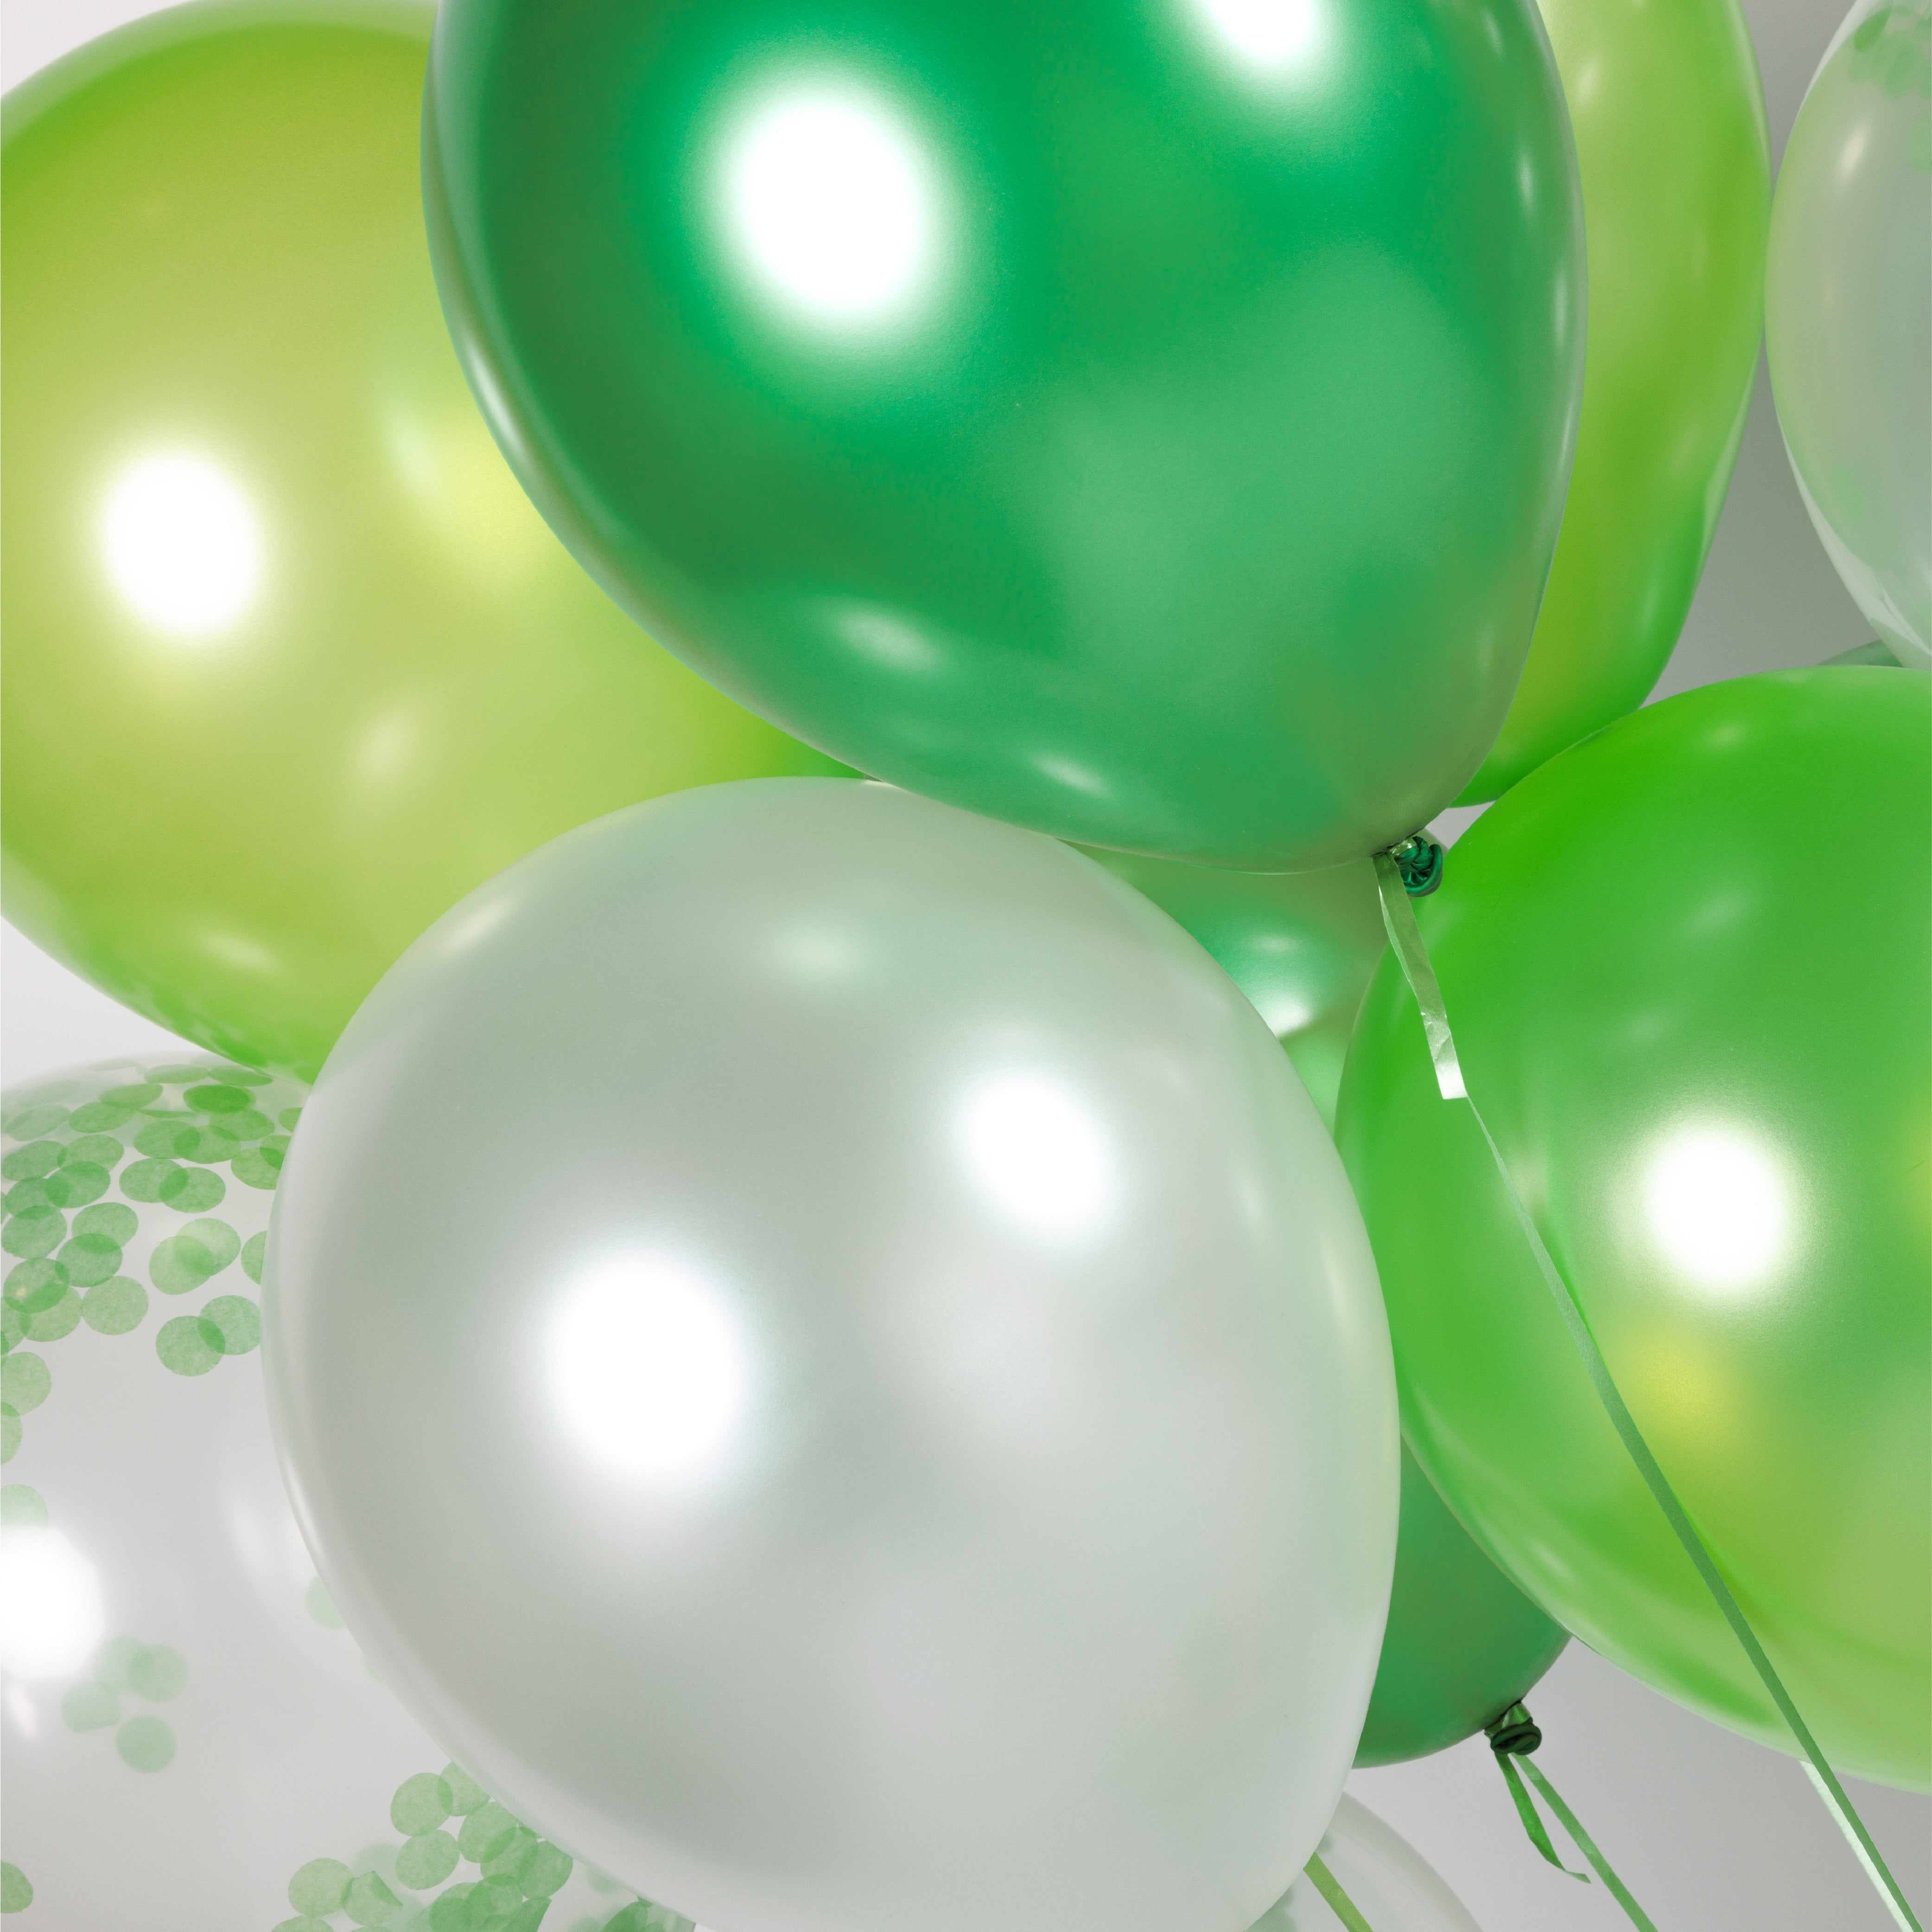 40 Stuks Groen, Wit & Donkergroen Ballonnen